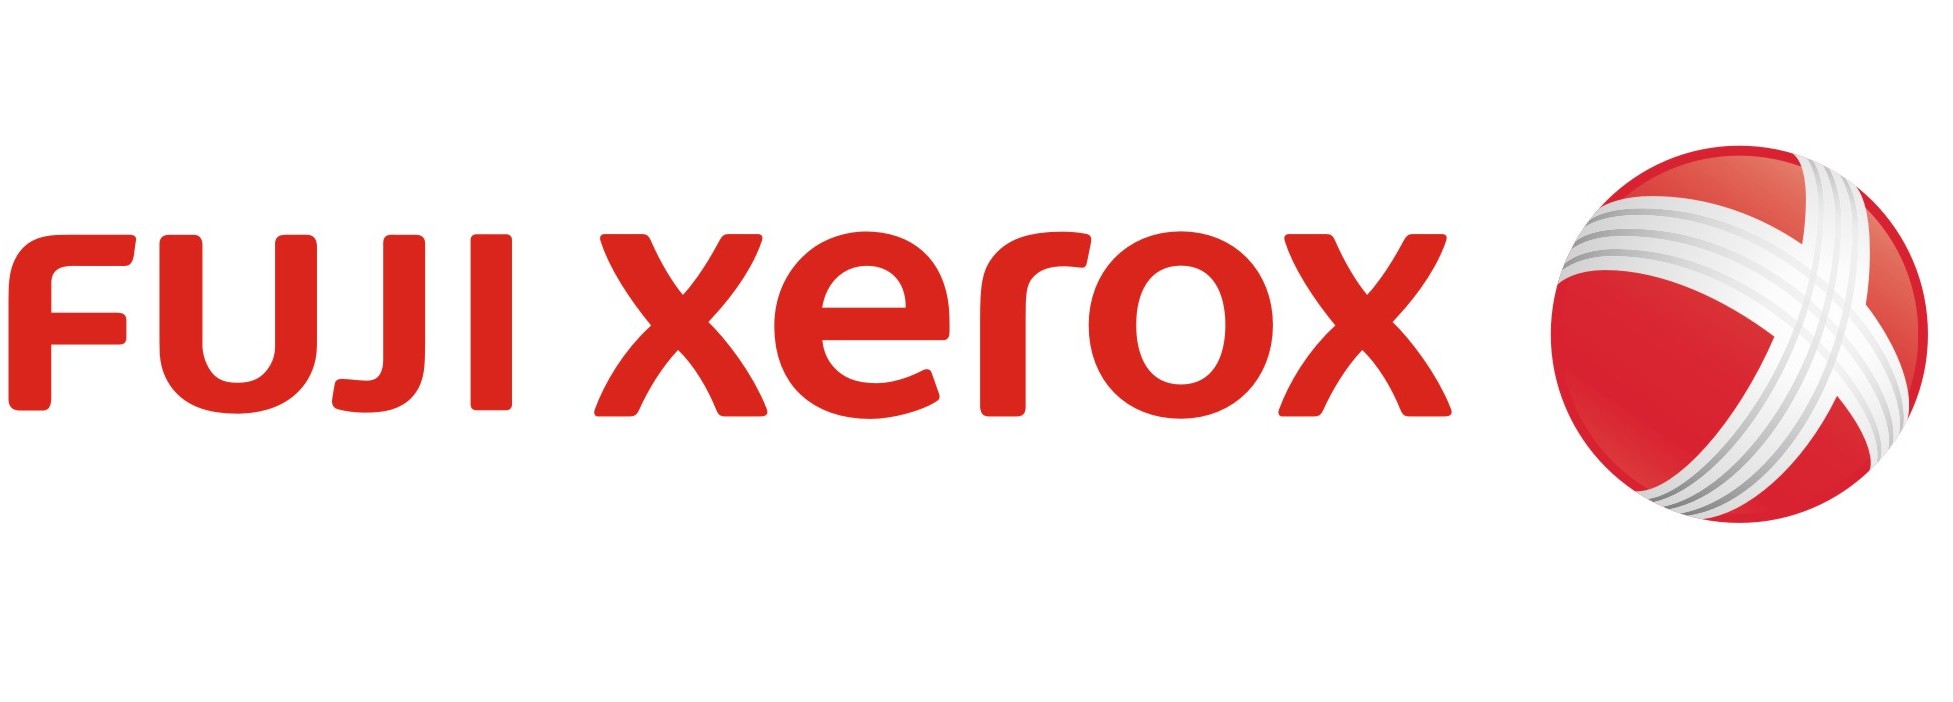 Fuji Xerox dẫn đầu thị phần Việt Nam 4 năm liên tục